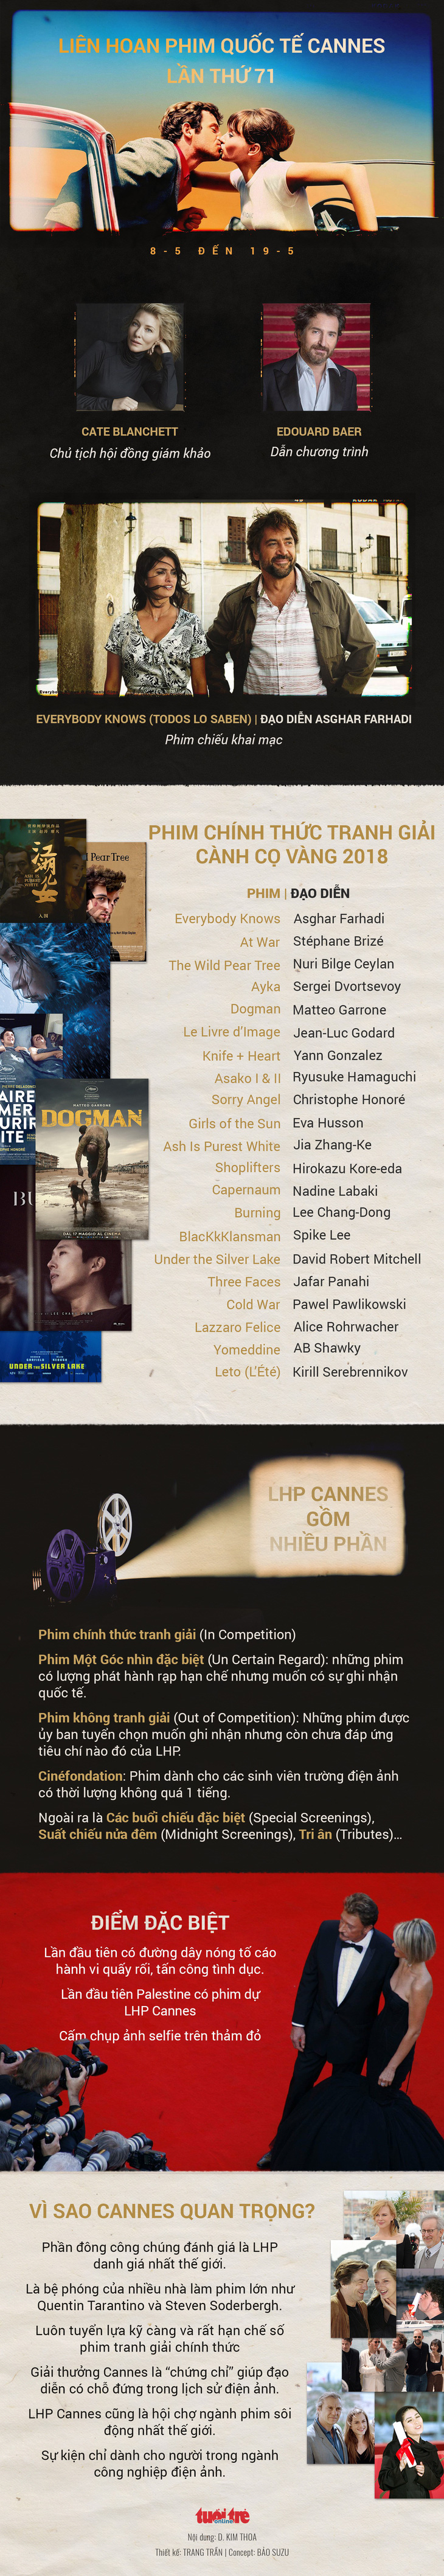 Cannes - sự kiện điện ảnh quan trọng nhất thế giới khai mạc - Ảnh 1.